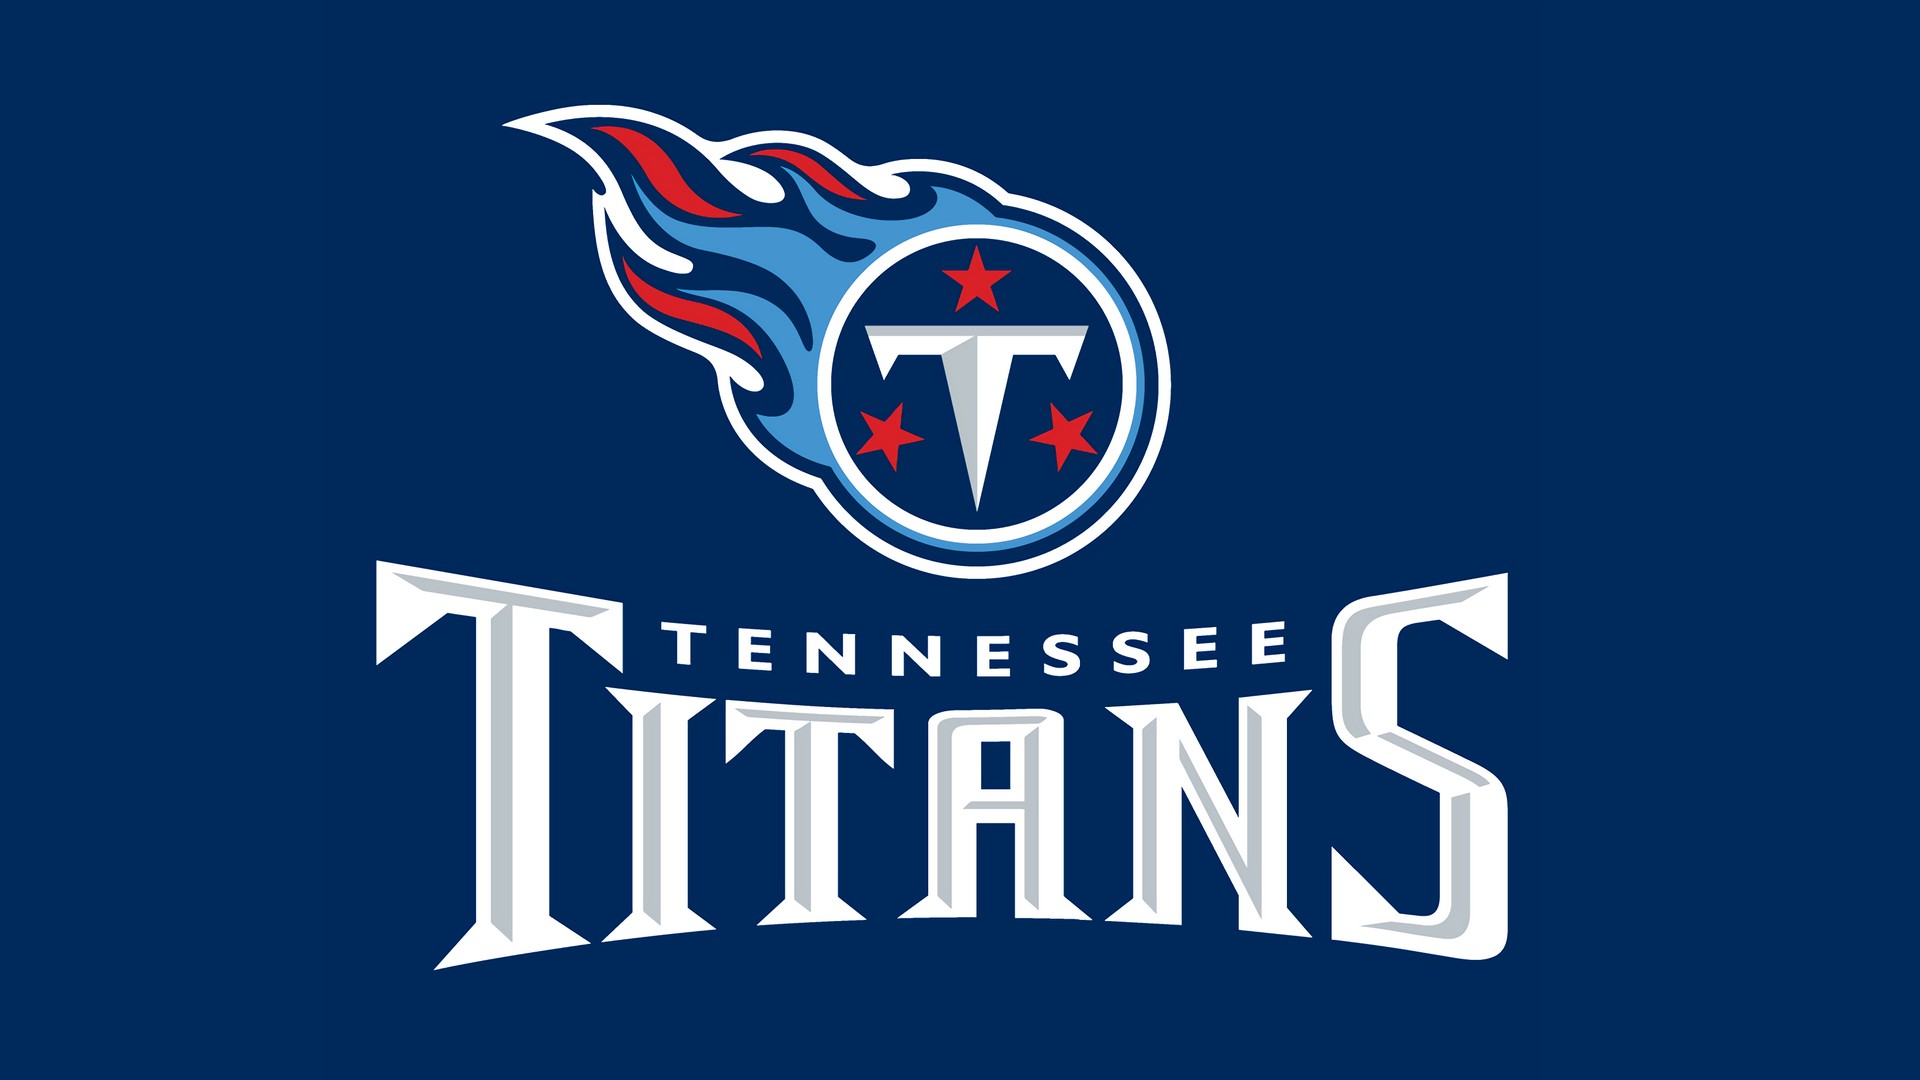 Tennessee Titans Wallpaper Hd - HD Wallpaper 